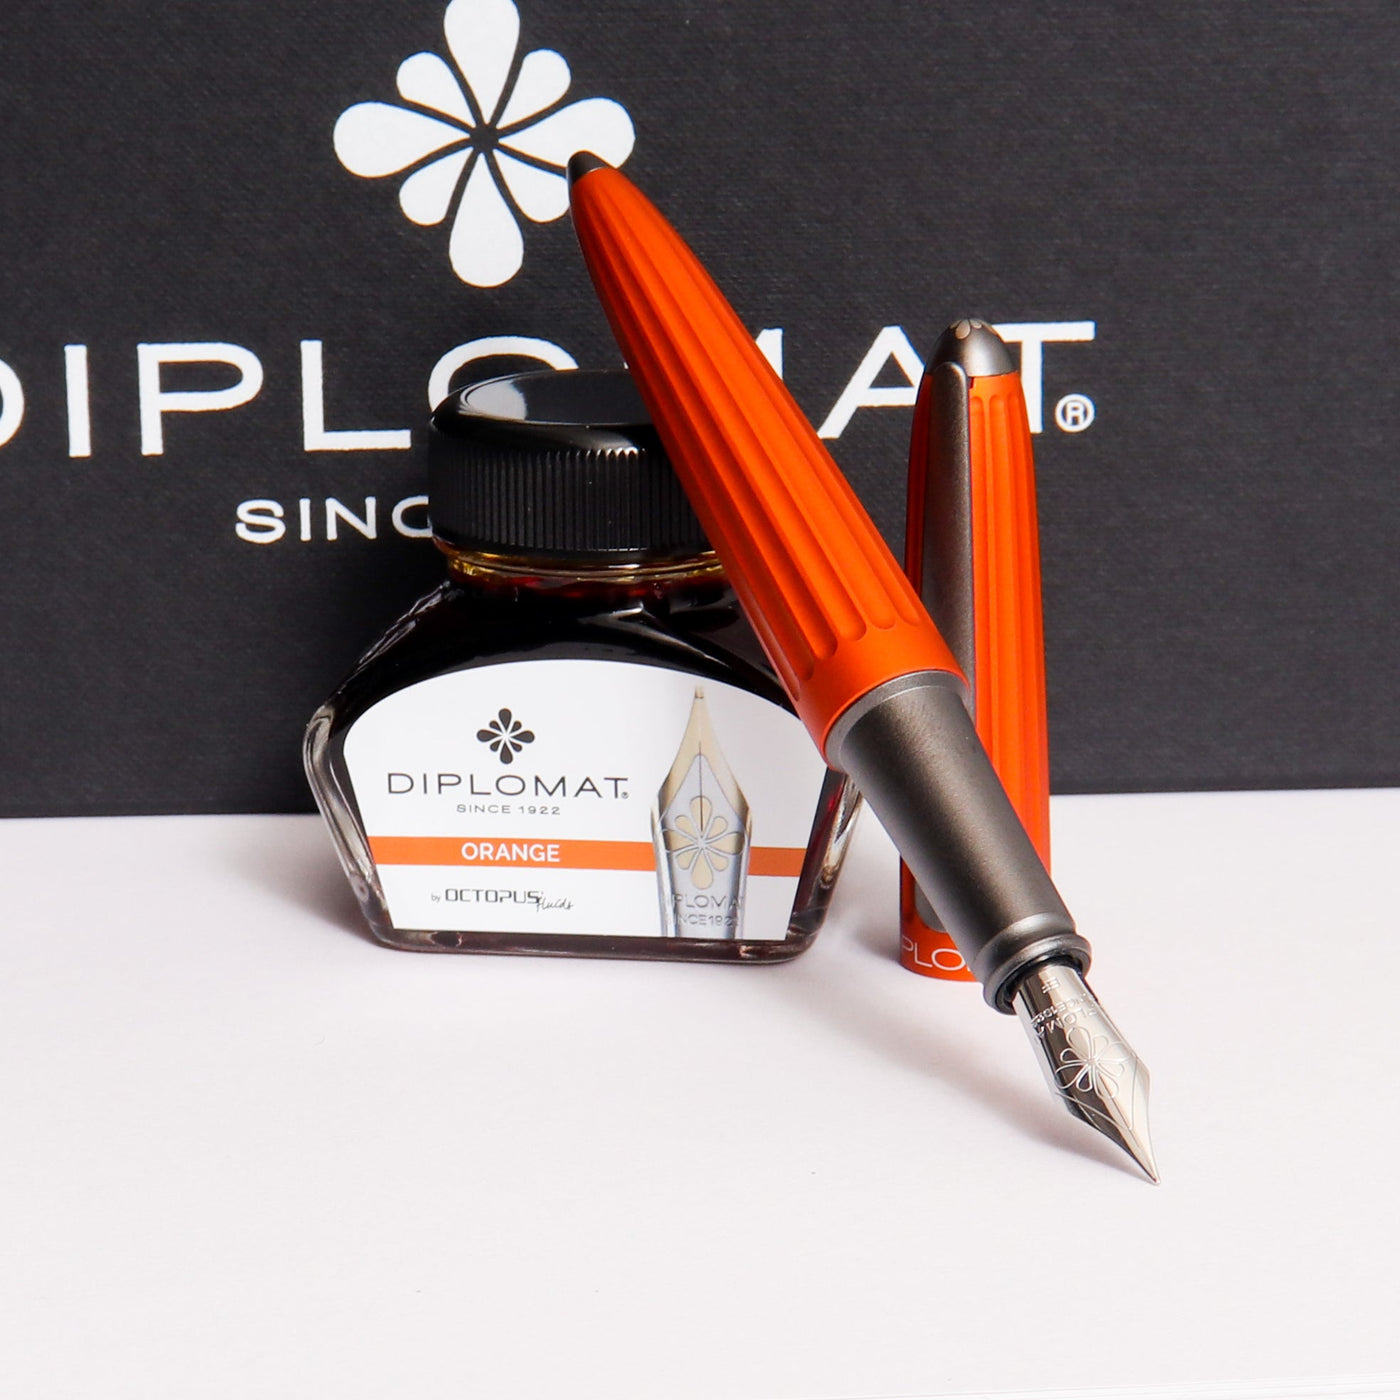 Diplomat-Aero-Orange-Fountain-Pen-Gift-Set-Anodized-Aluminum-Body